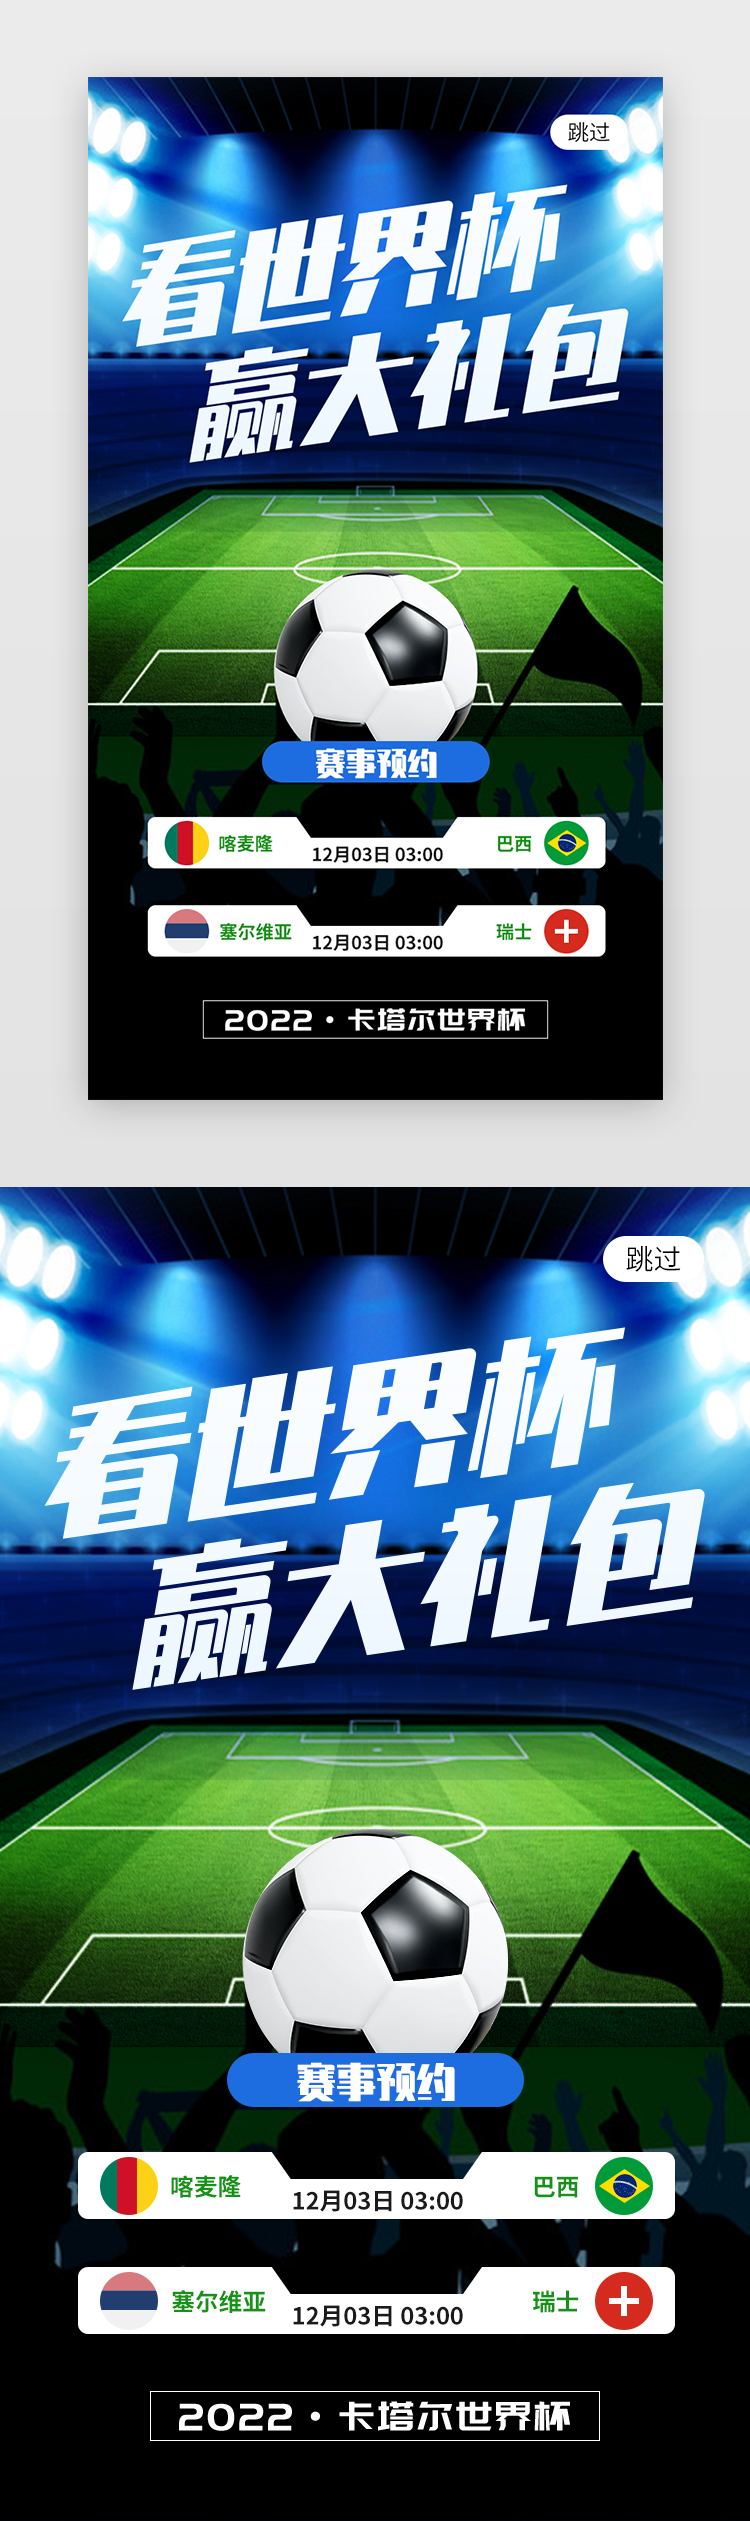 看世界杯赢大礼包app闪屏创意绿色足球图片